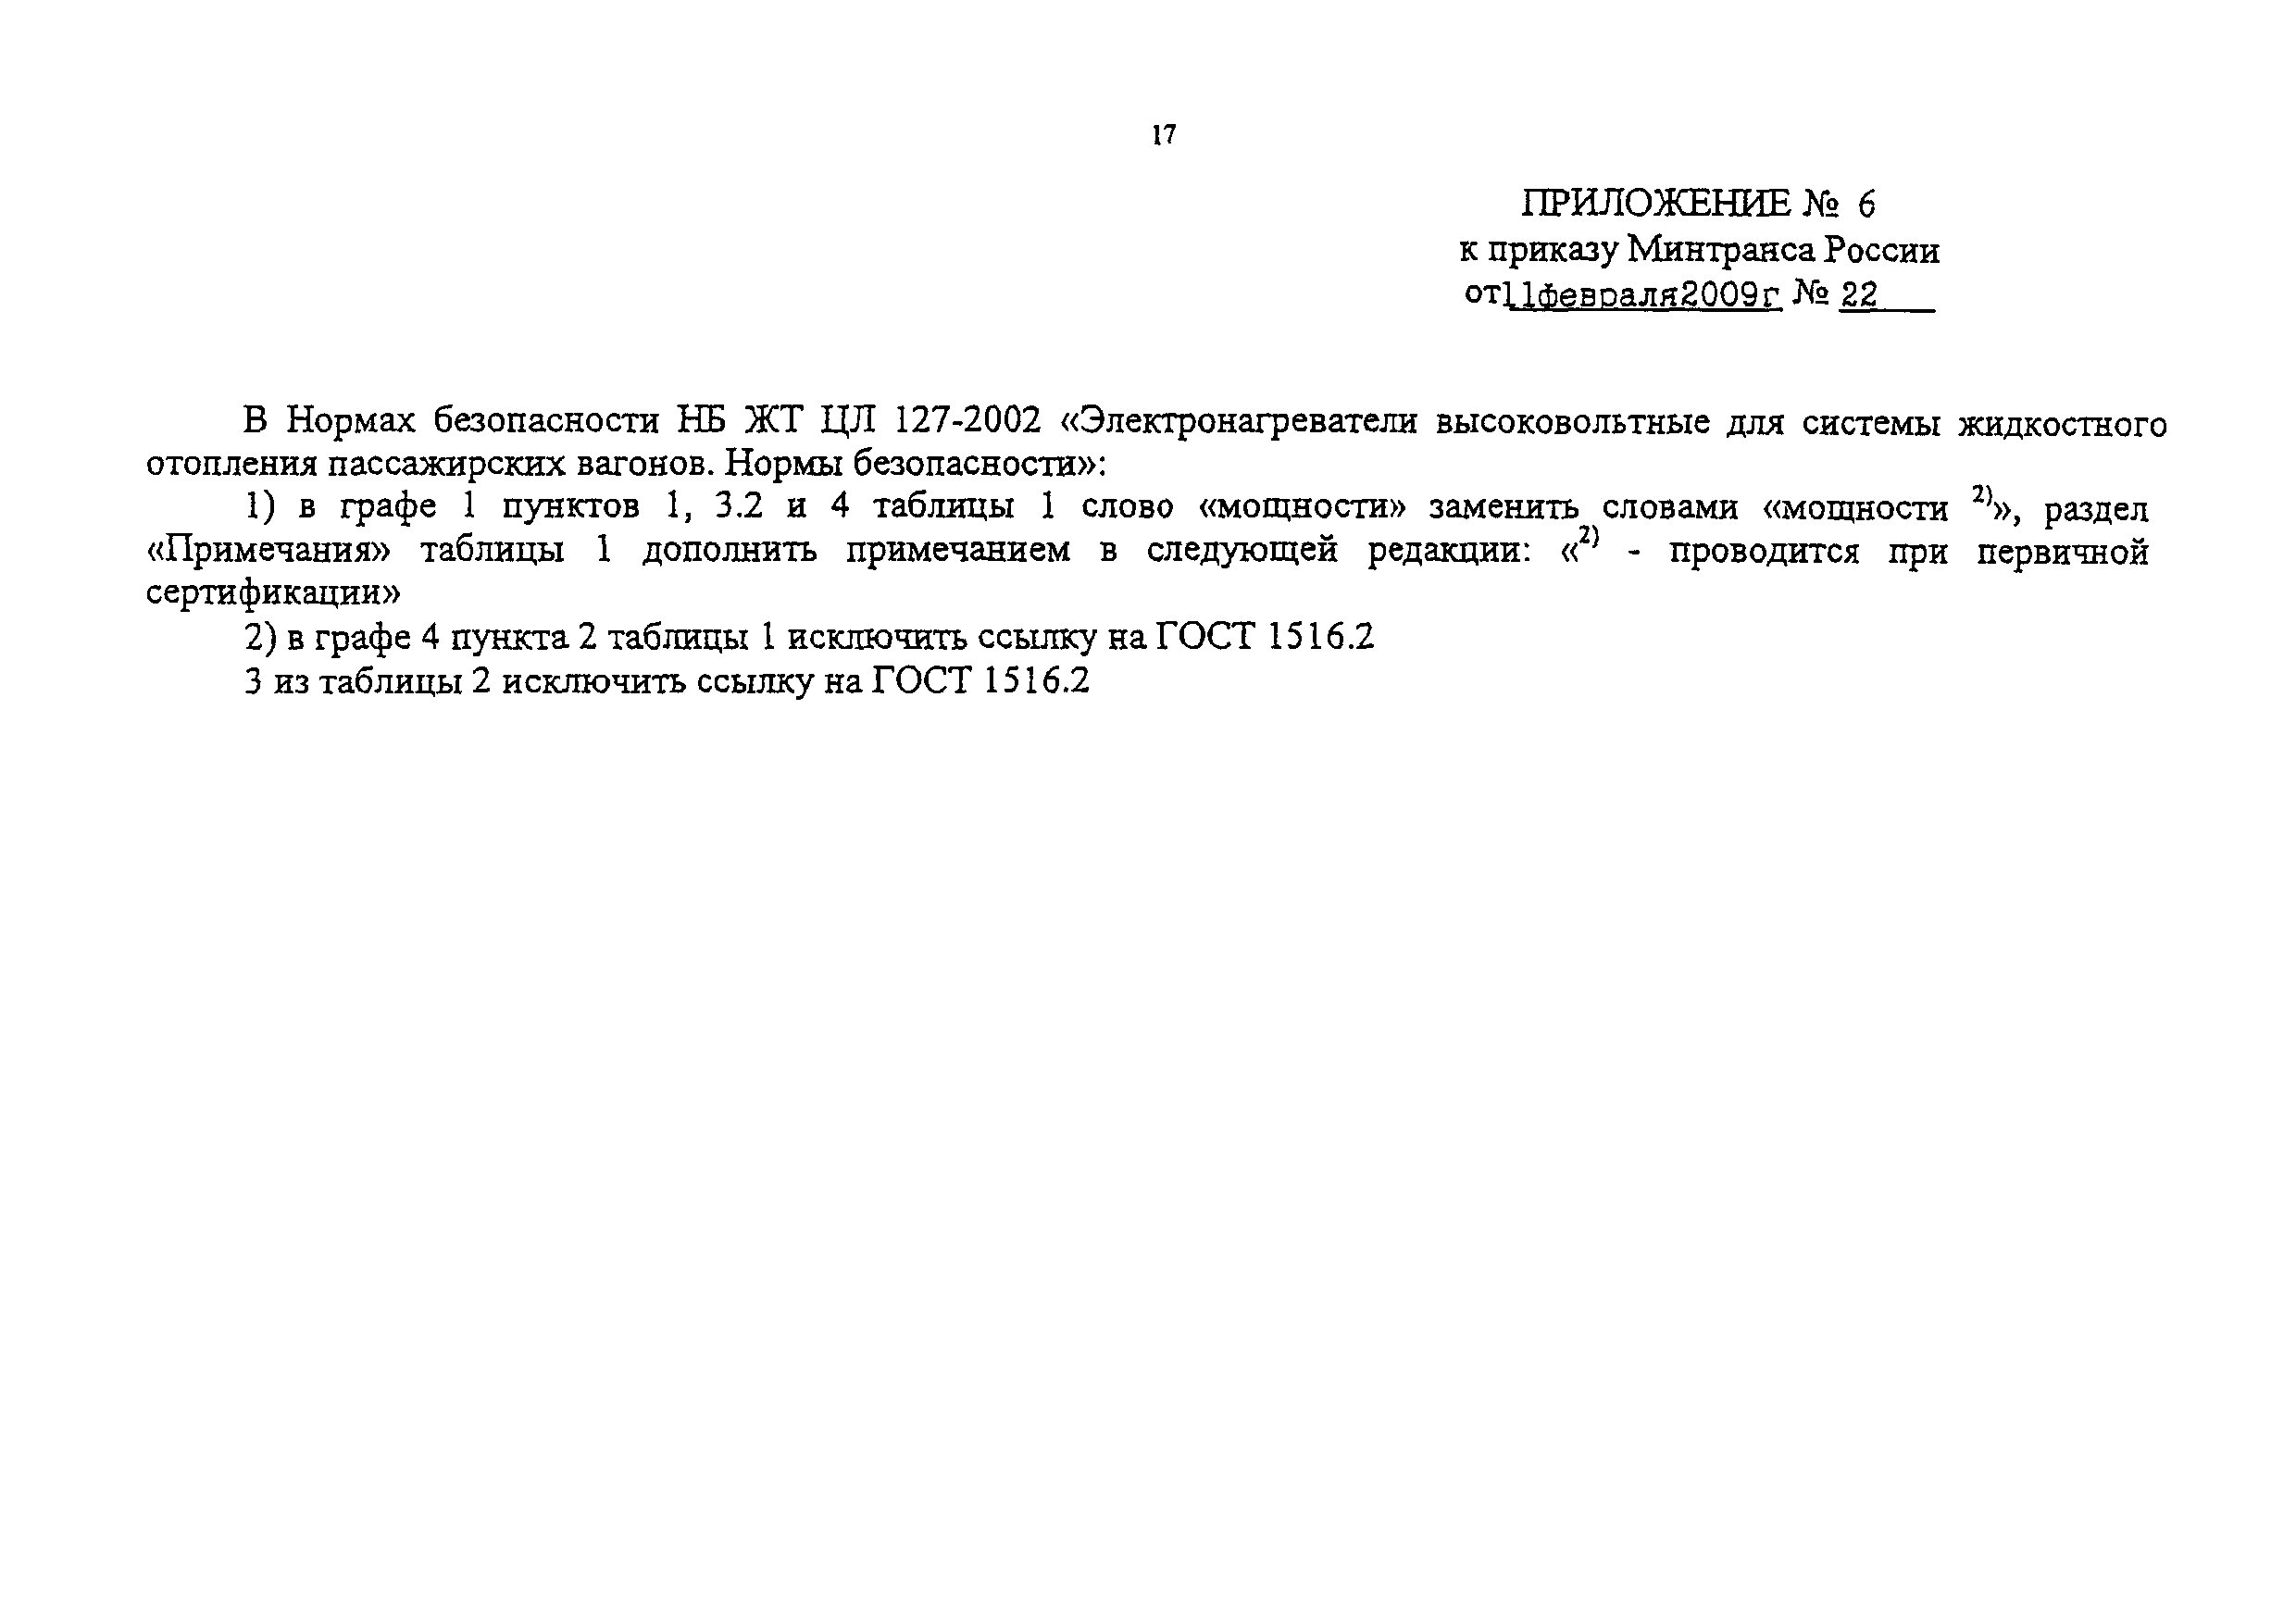 НБ ЖТ ЦЛ 127-2003